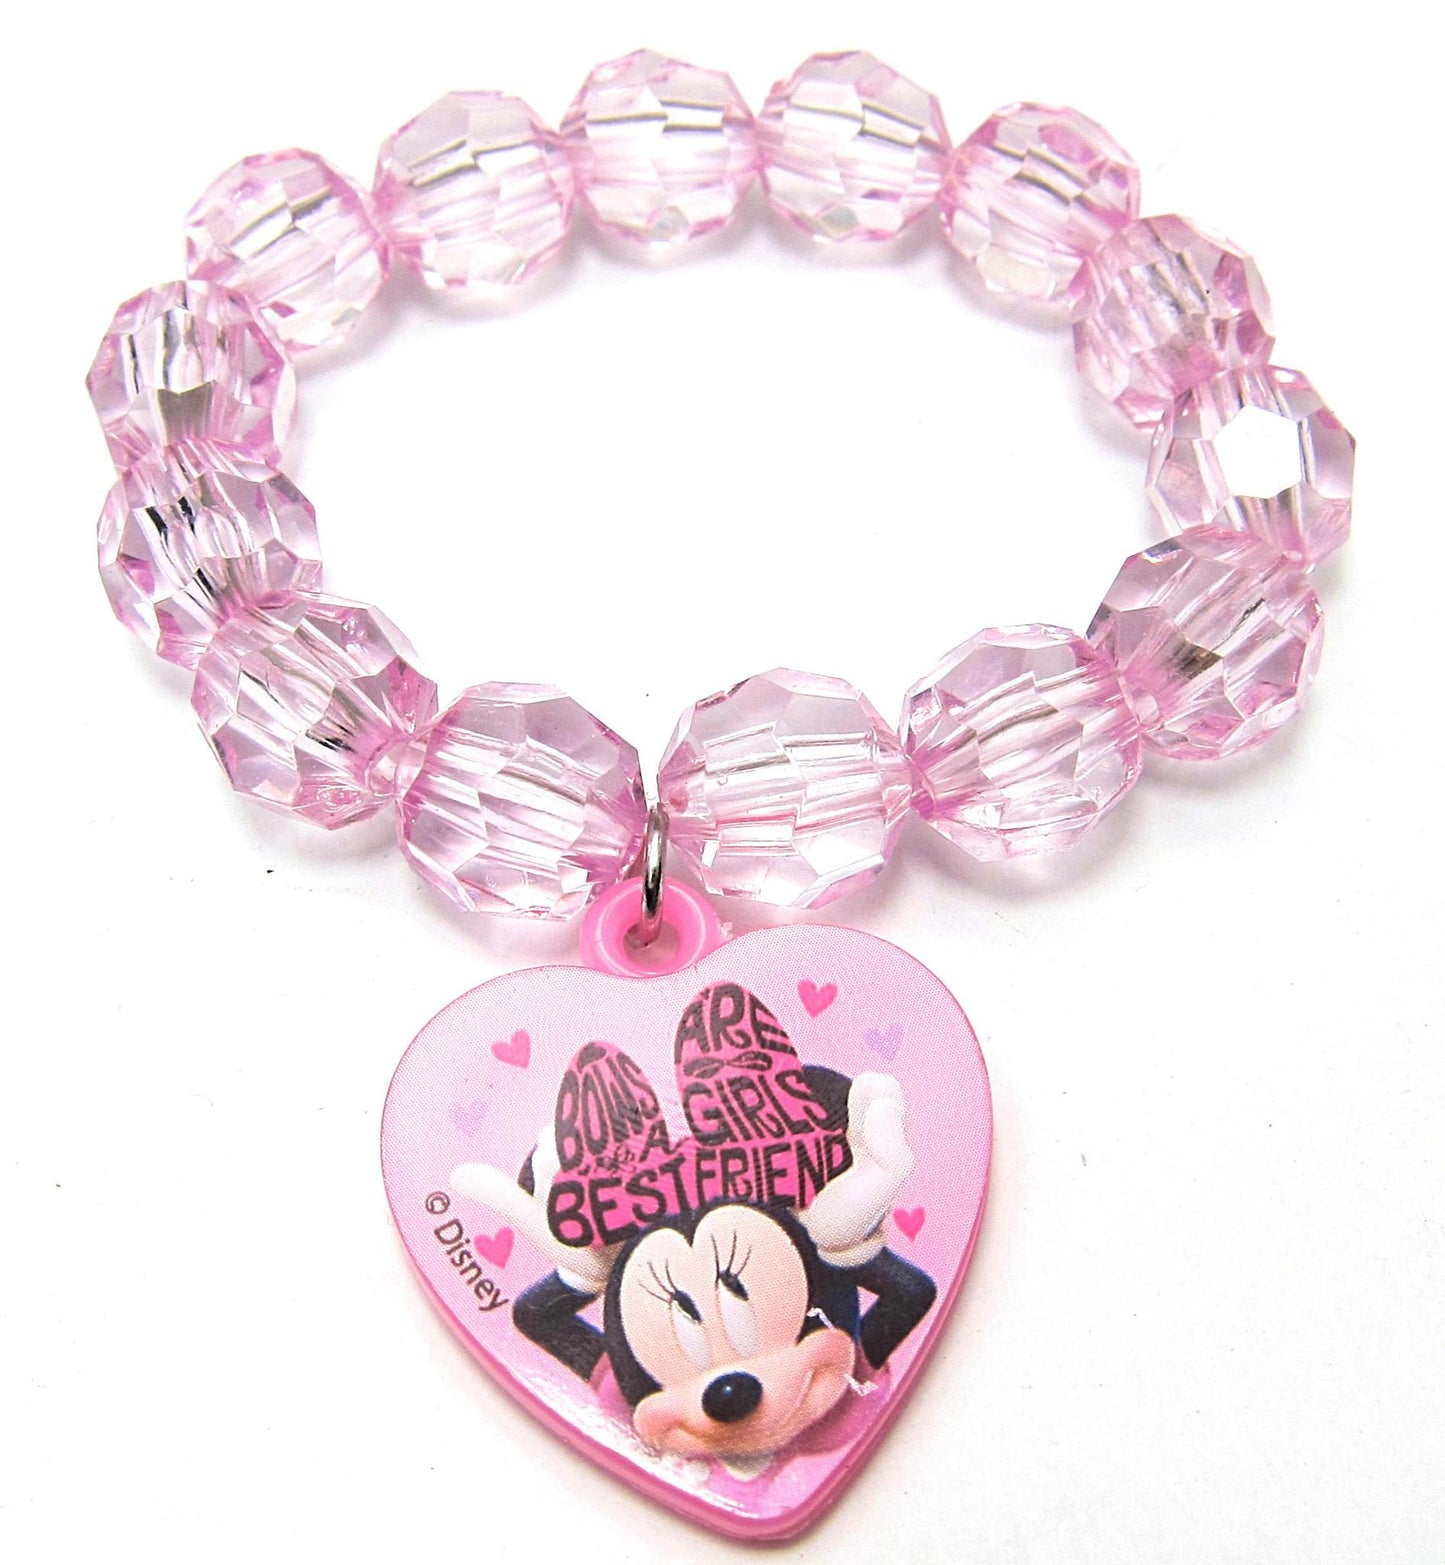 Faceted Beaded Bracelet with Plastic Charm Feature: Minnie Mouse, Disney Frozen, L.O.L Surprise (1Pcs)